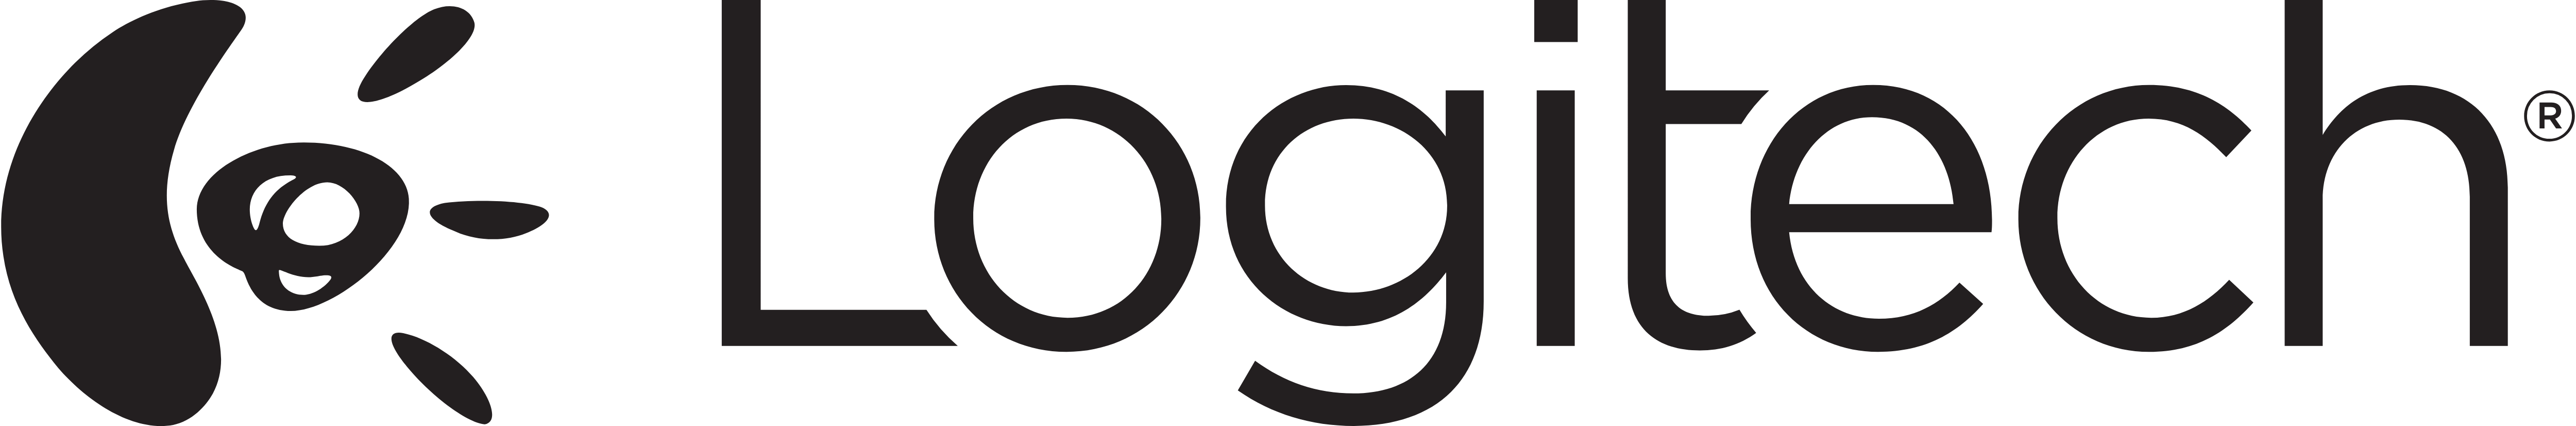 Logitek Logo - Logitech – Logos Download